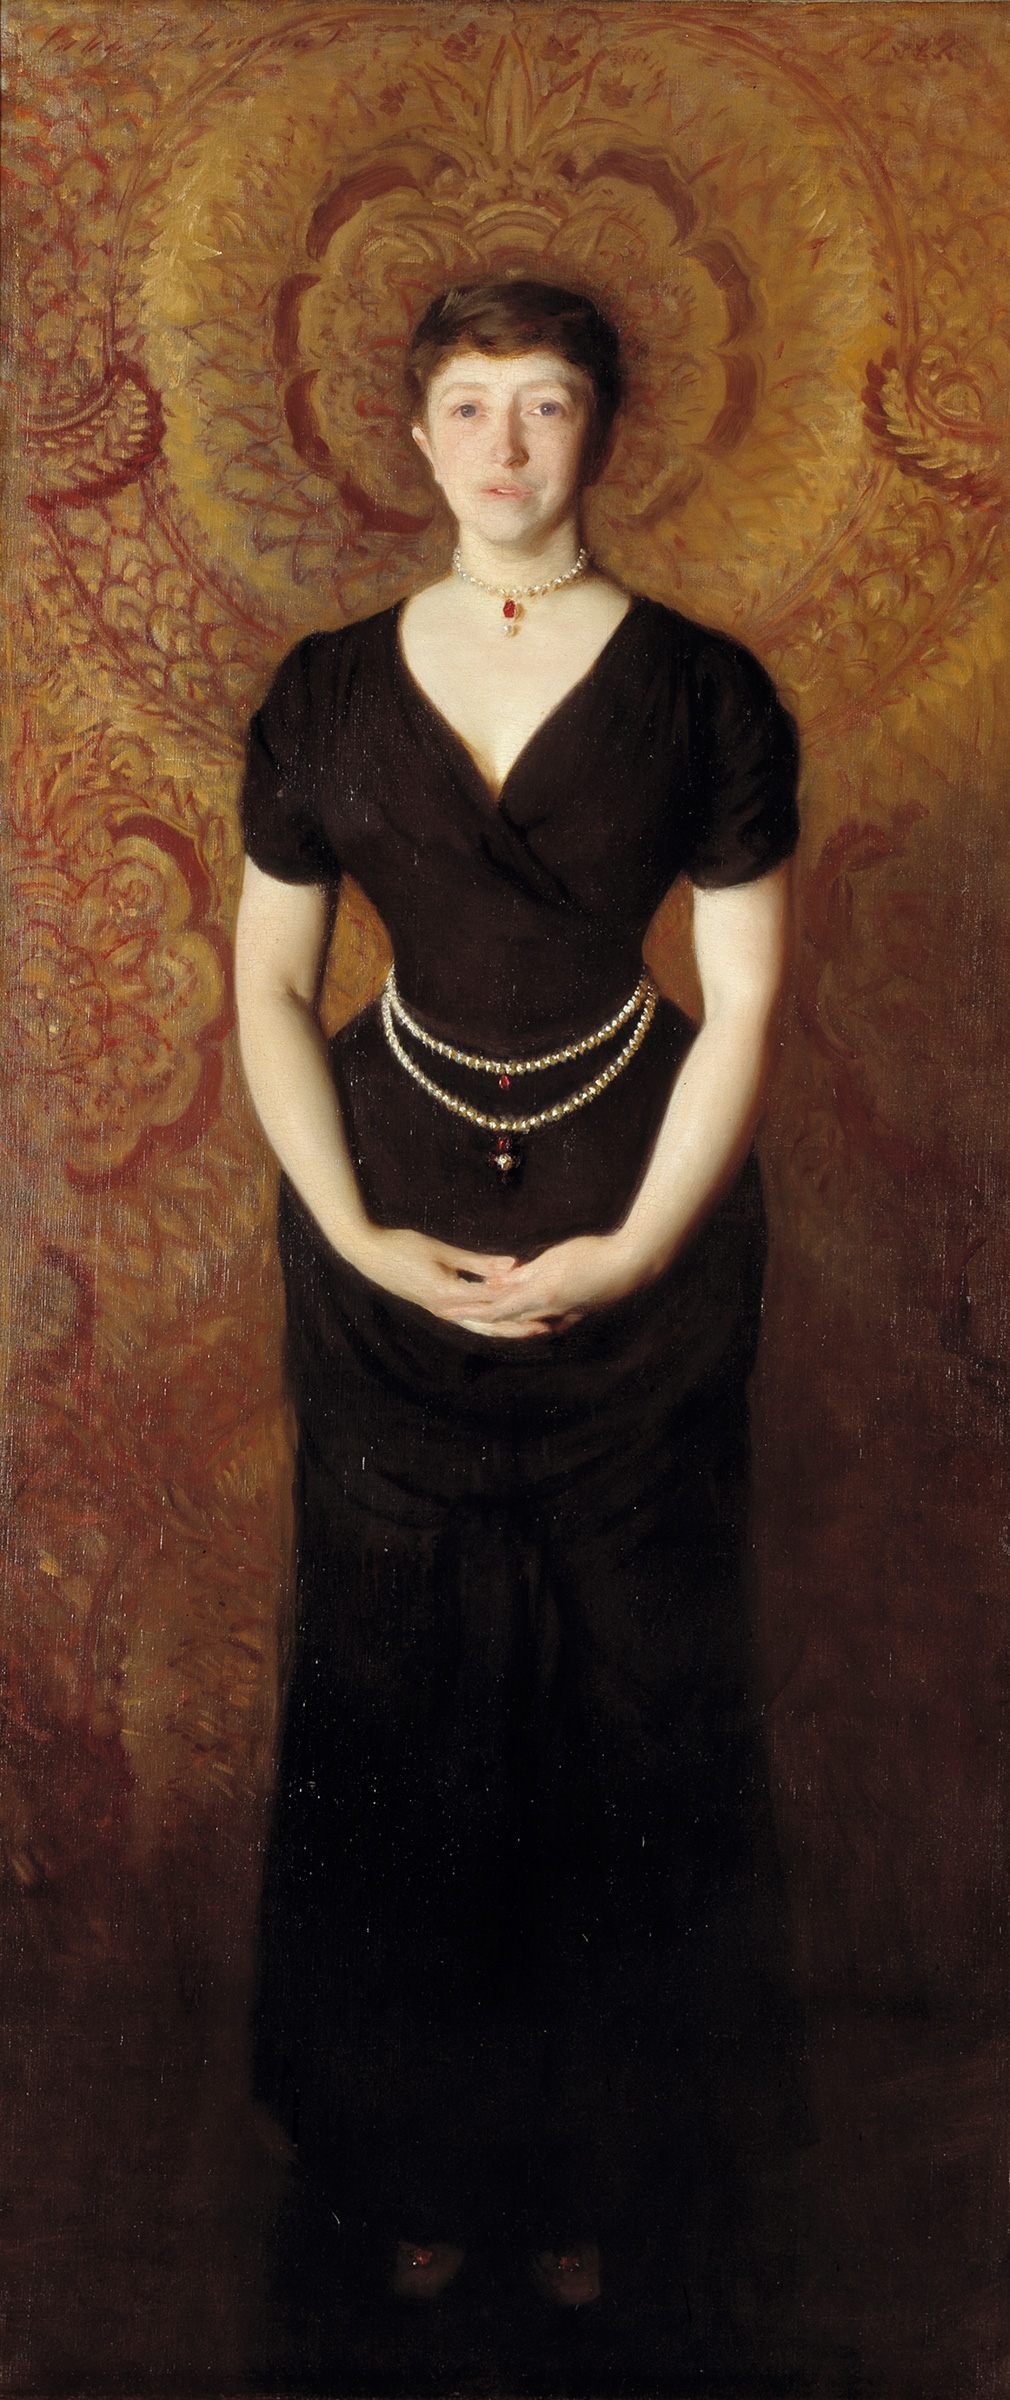 Retrato de Isabella Stewart Gardner by John Singer Sargent - 1888 